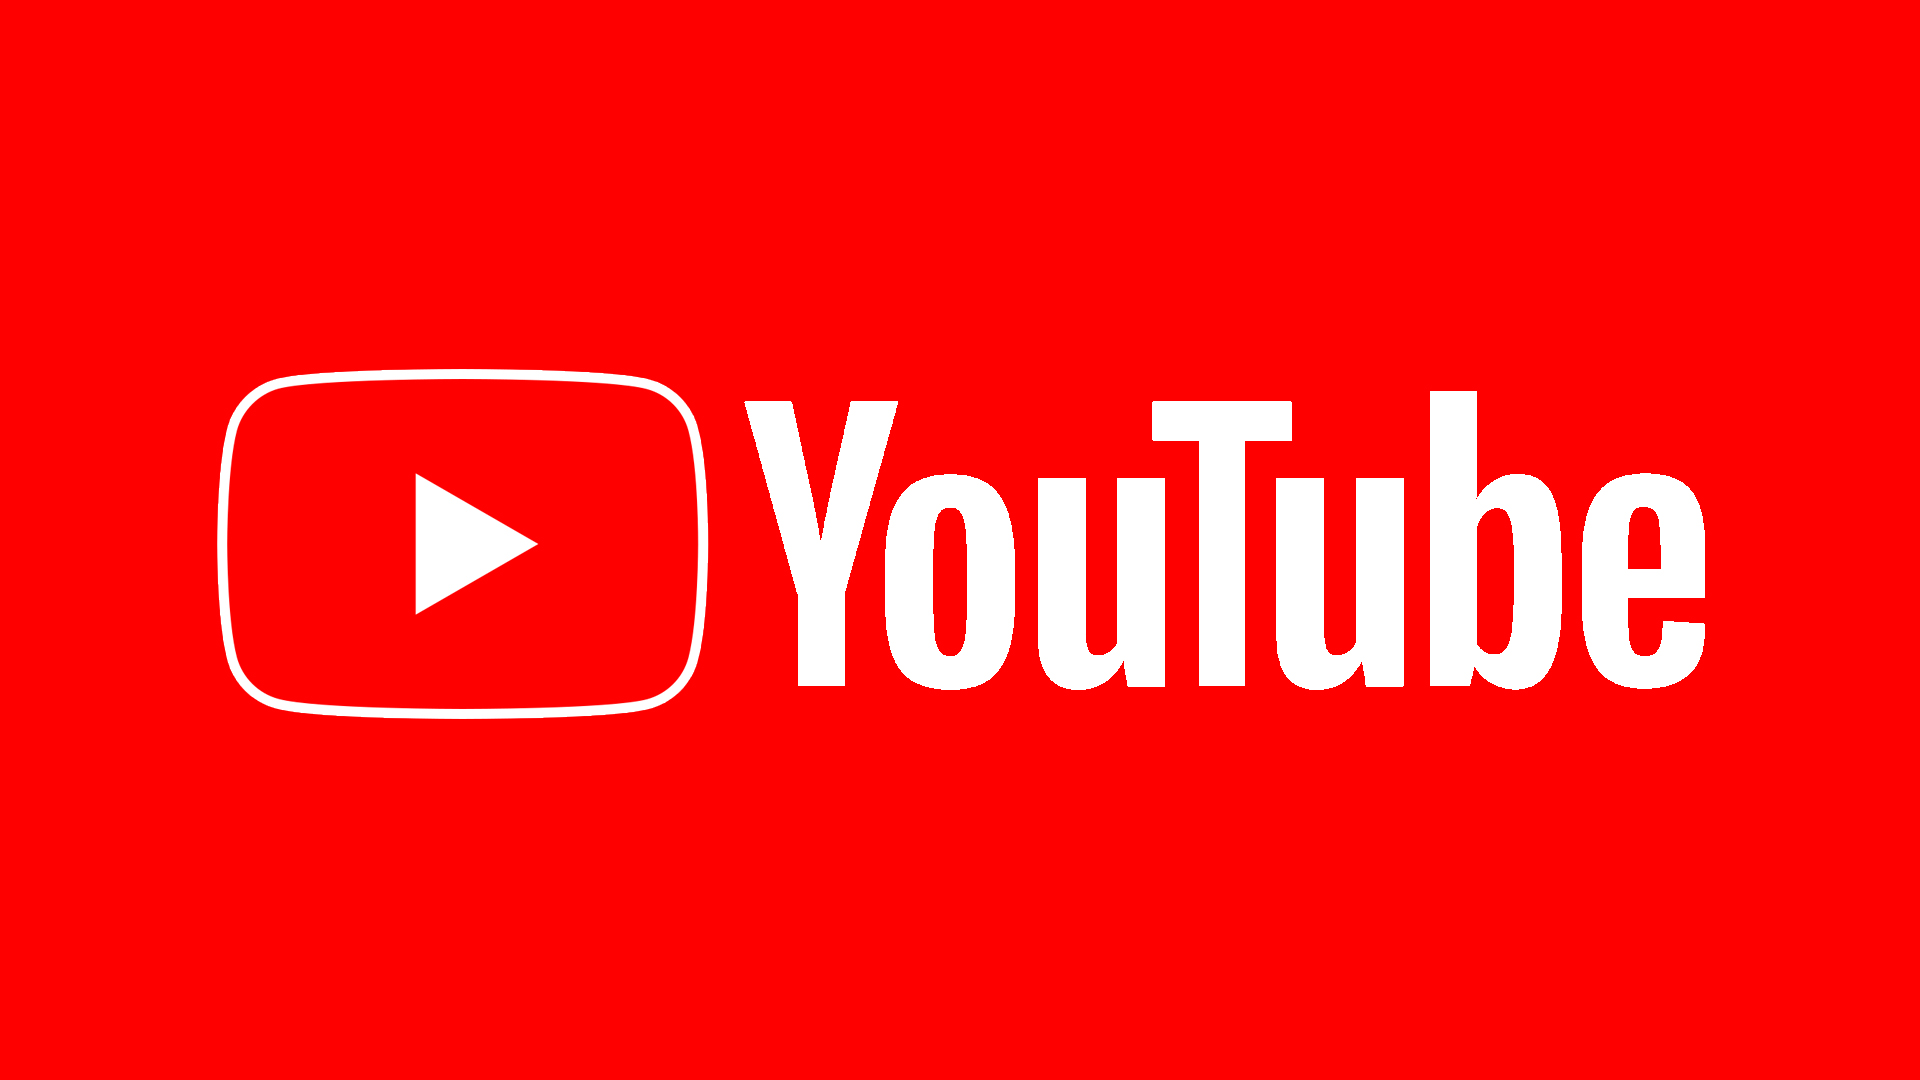 YouTube chia sẻ cách tính thu nhập mới cho các nhà sáng tạo nội dung